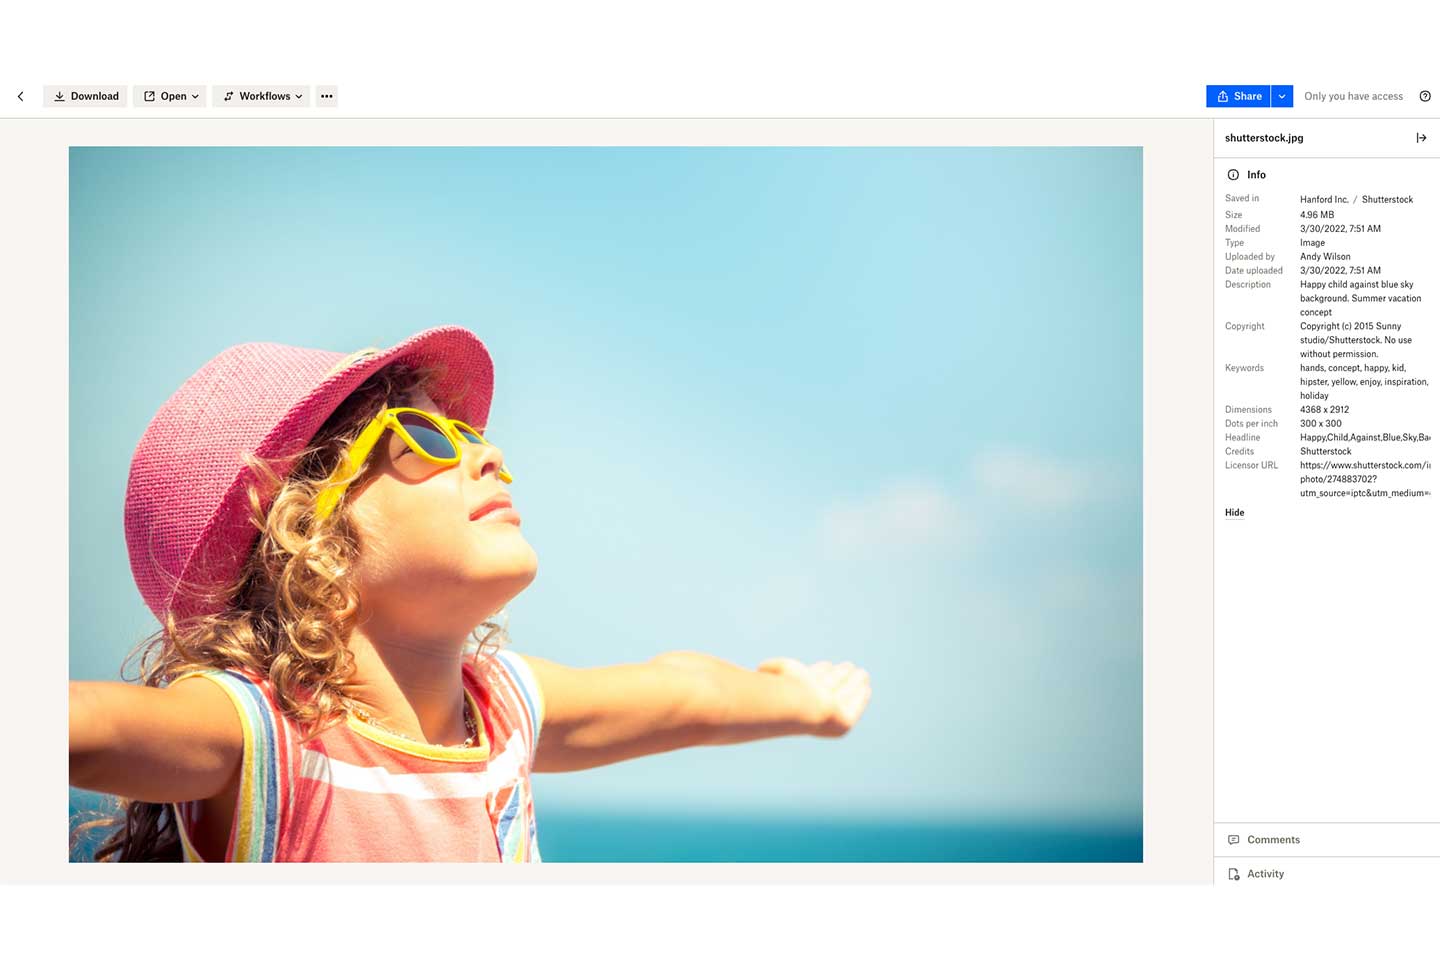 Foto de una niña joven en la playa mostrada como vista previa de Dropbox con detalles de imagen en la barra lateral derecha